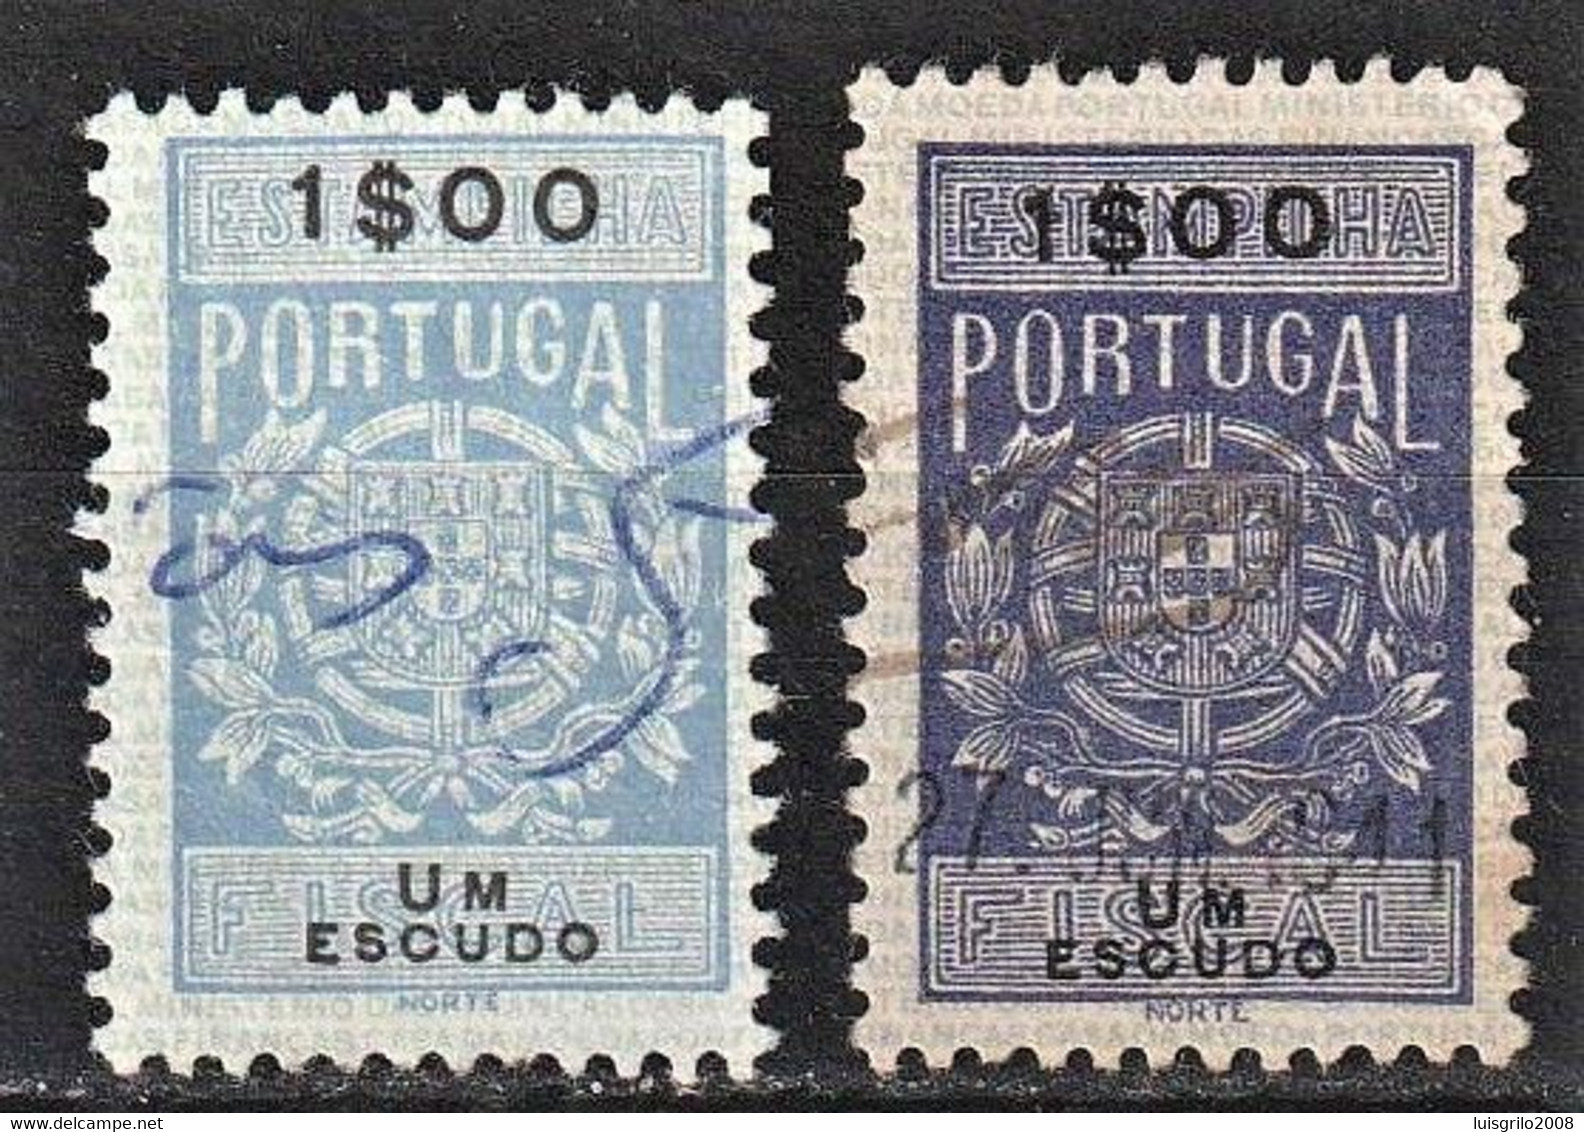 VERY RARE STAMP - Fiscal/ Revenue, Portugal 1940 - Estampilha Fiscal -|- 1$00 - DIFFERENT COLOR - Usado